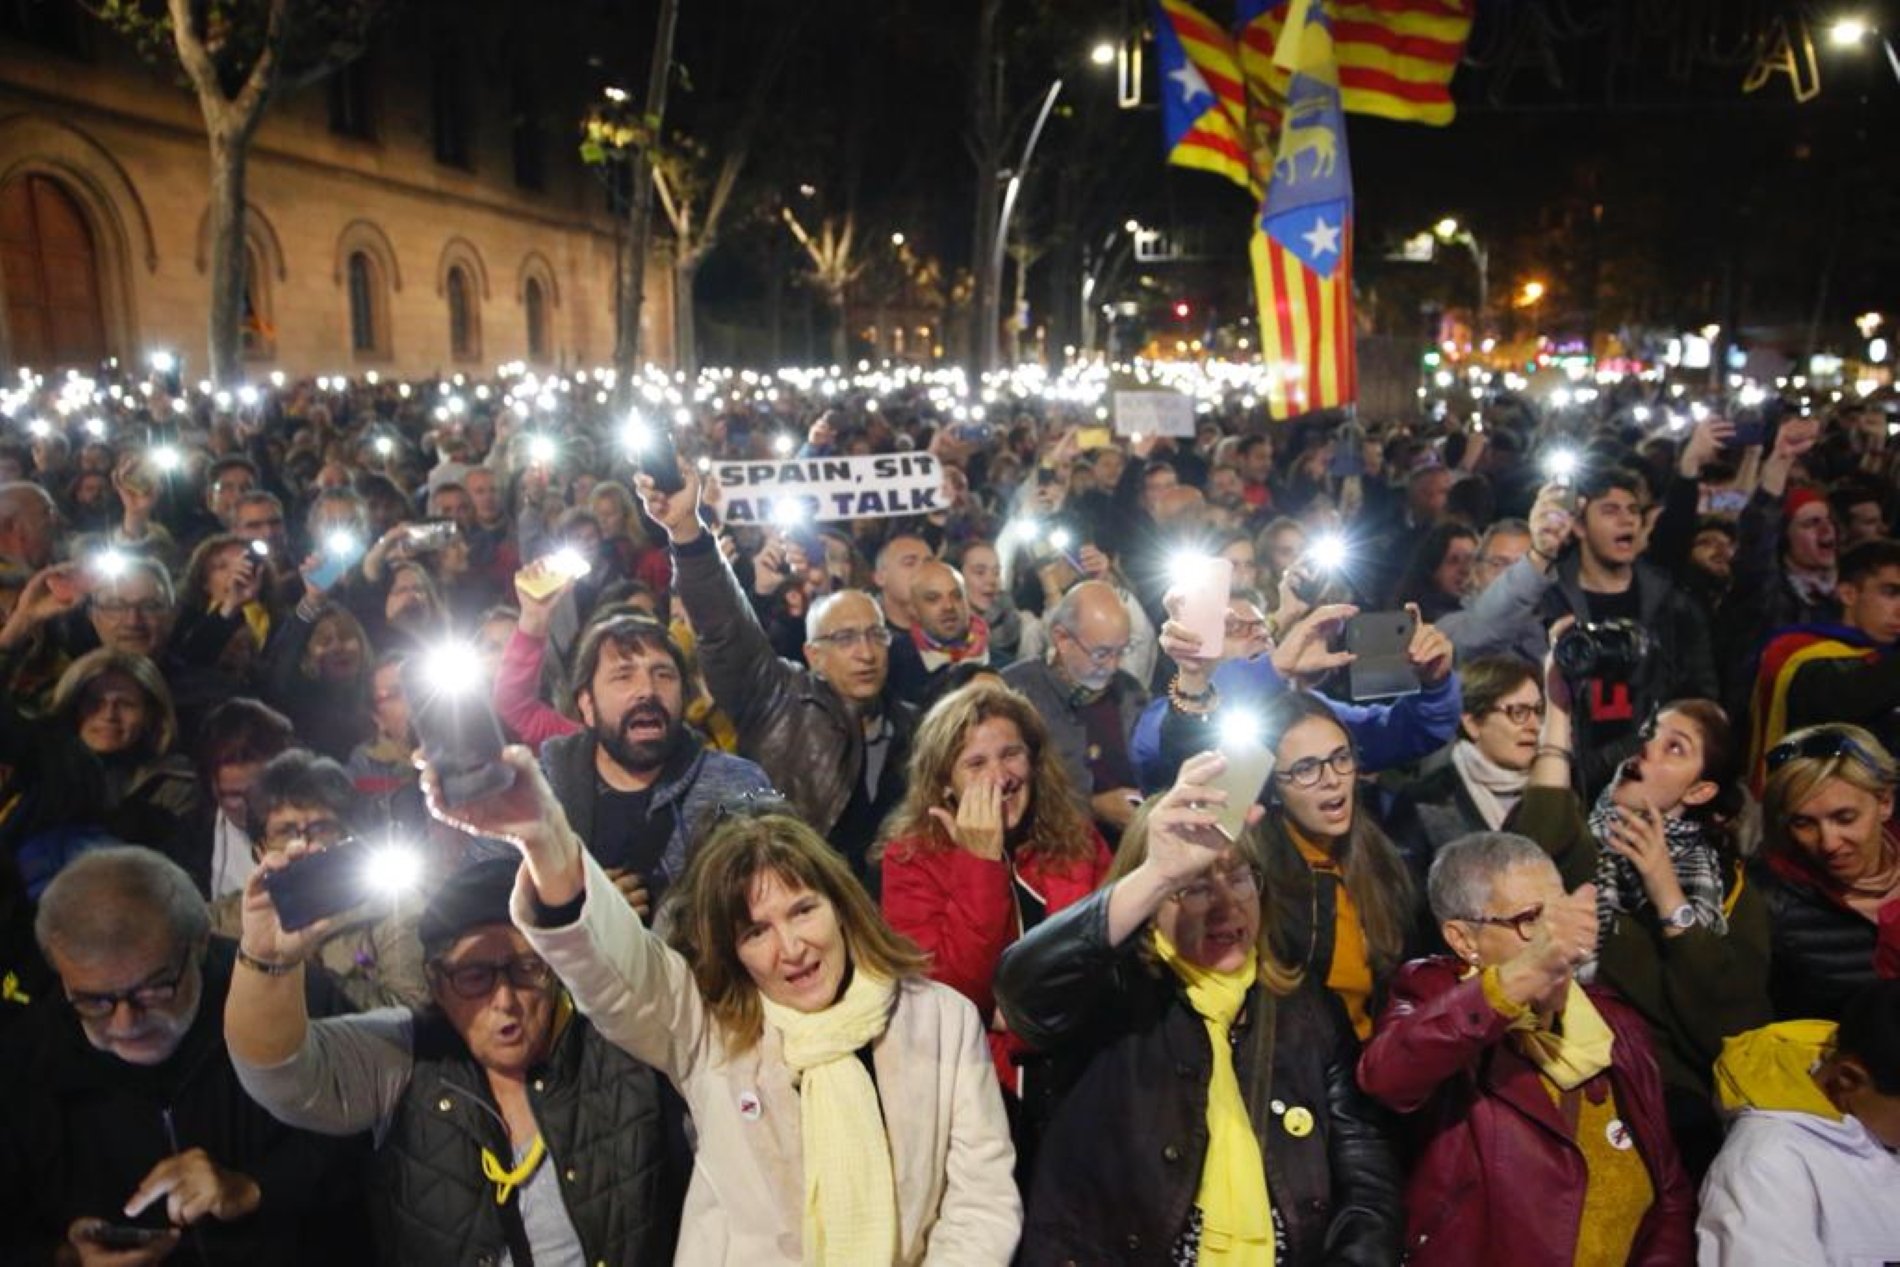 Així retrata Reuters la segona acció del Tsunami, "el grup secret de protesta català"